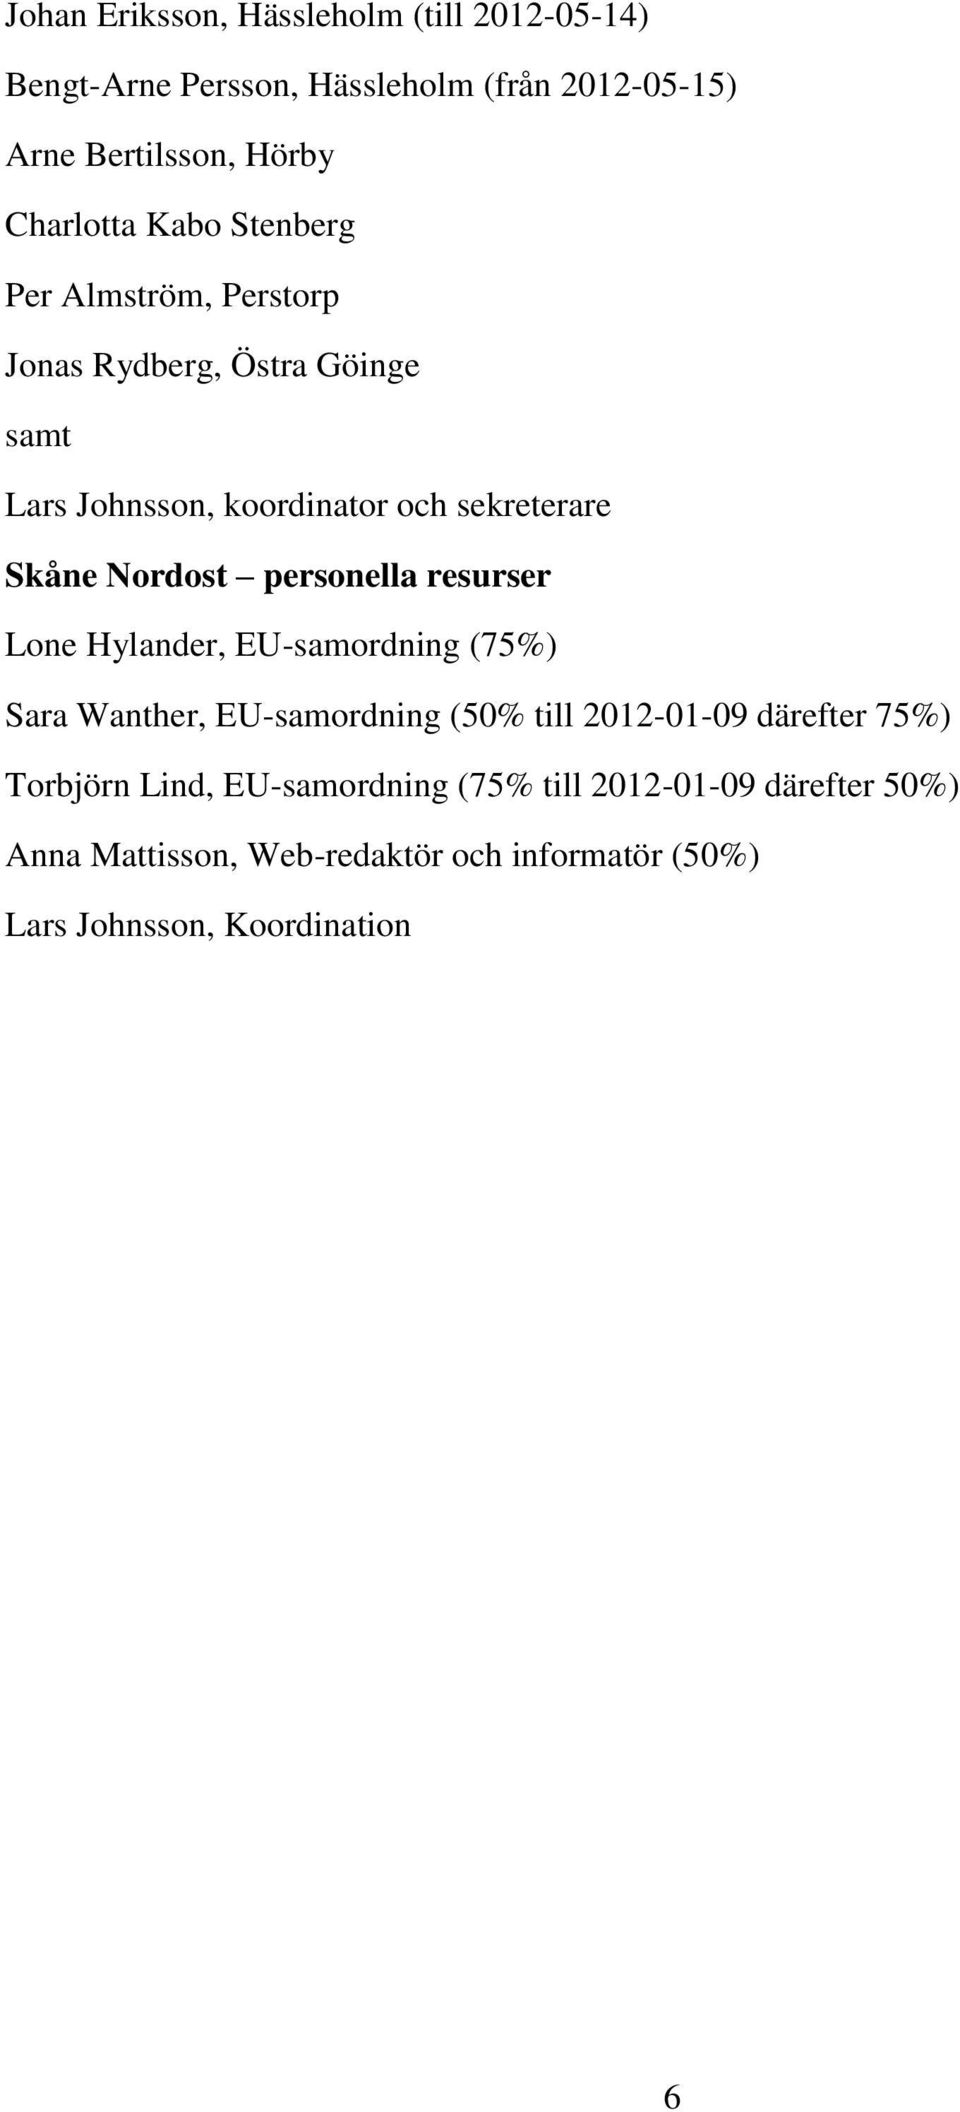 personella resurser Lone Hylander, EU-samordning (75%) Sara Wanther, EU-samordning (50% till 2012-01-09 därefter 75%) Torbjörn